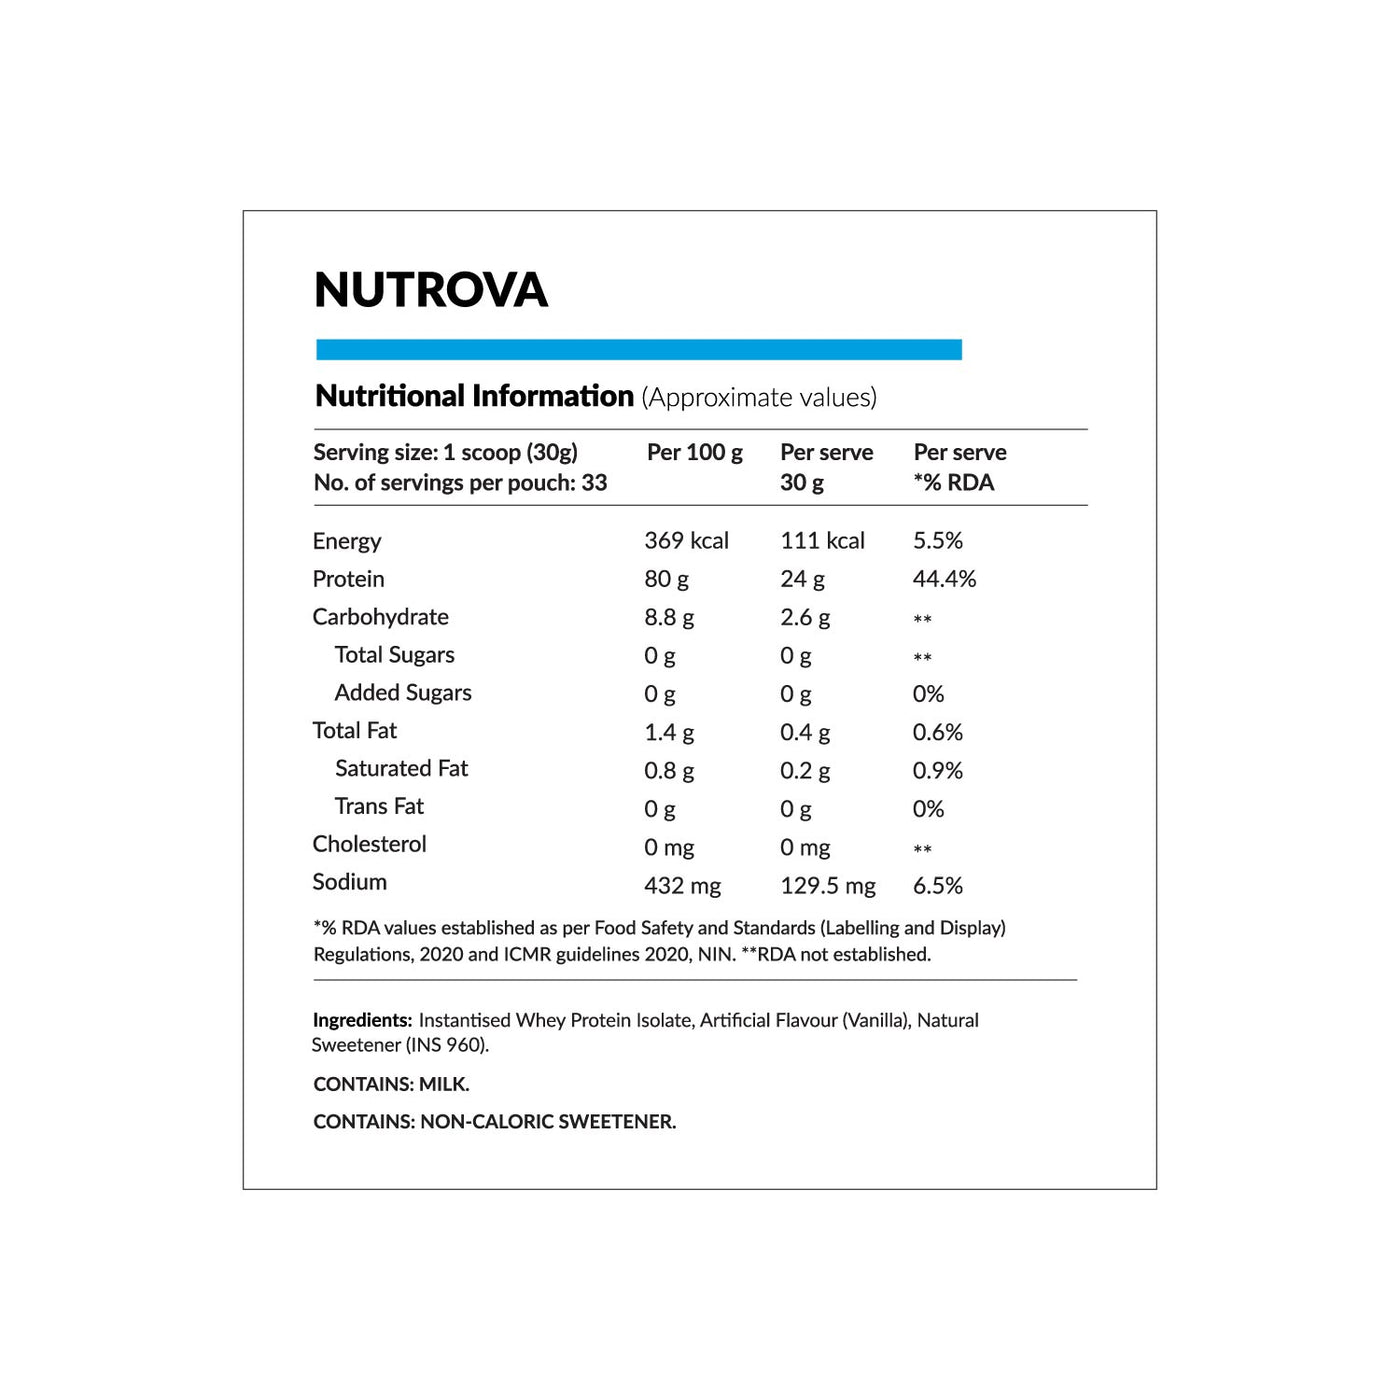 Nutrova Whey Protein Isolate (Vanilla)